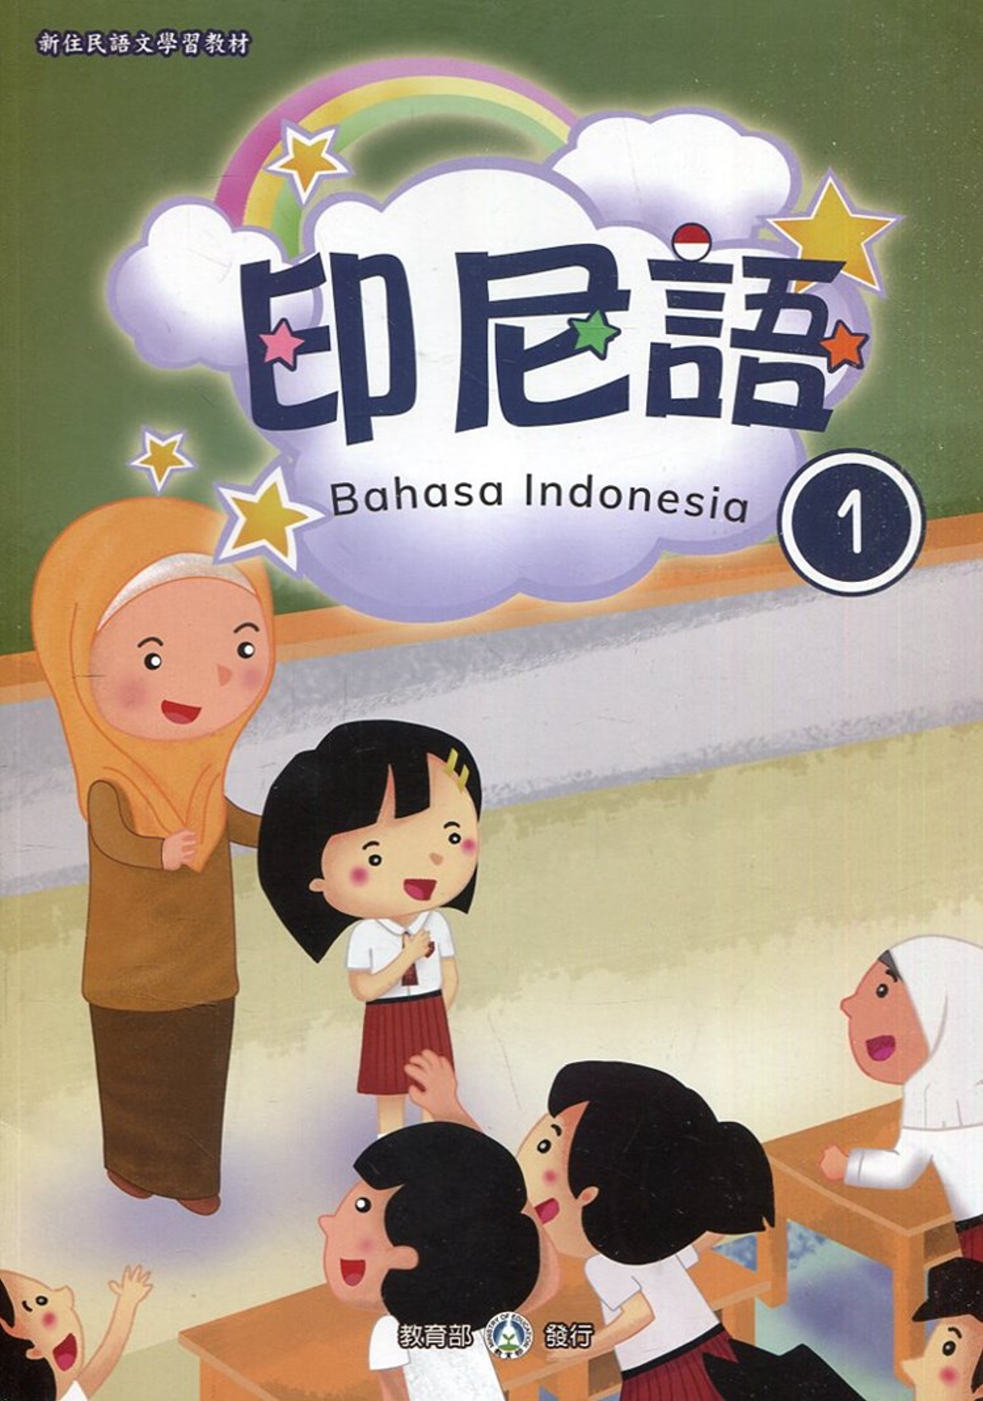 新住民語文學習教材印尼語第1冊(二版)